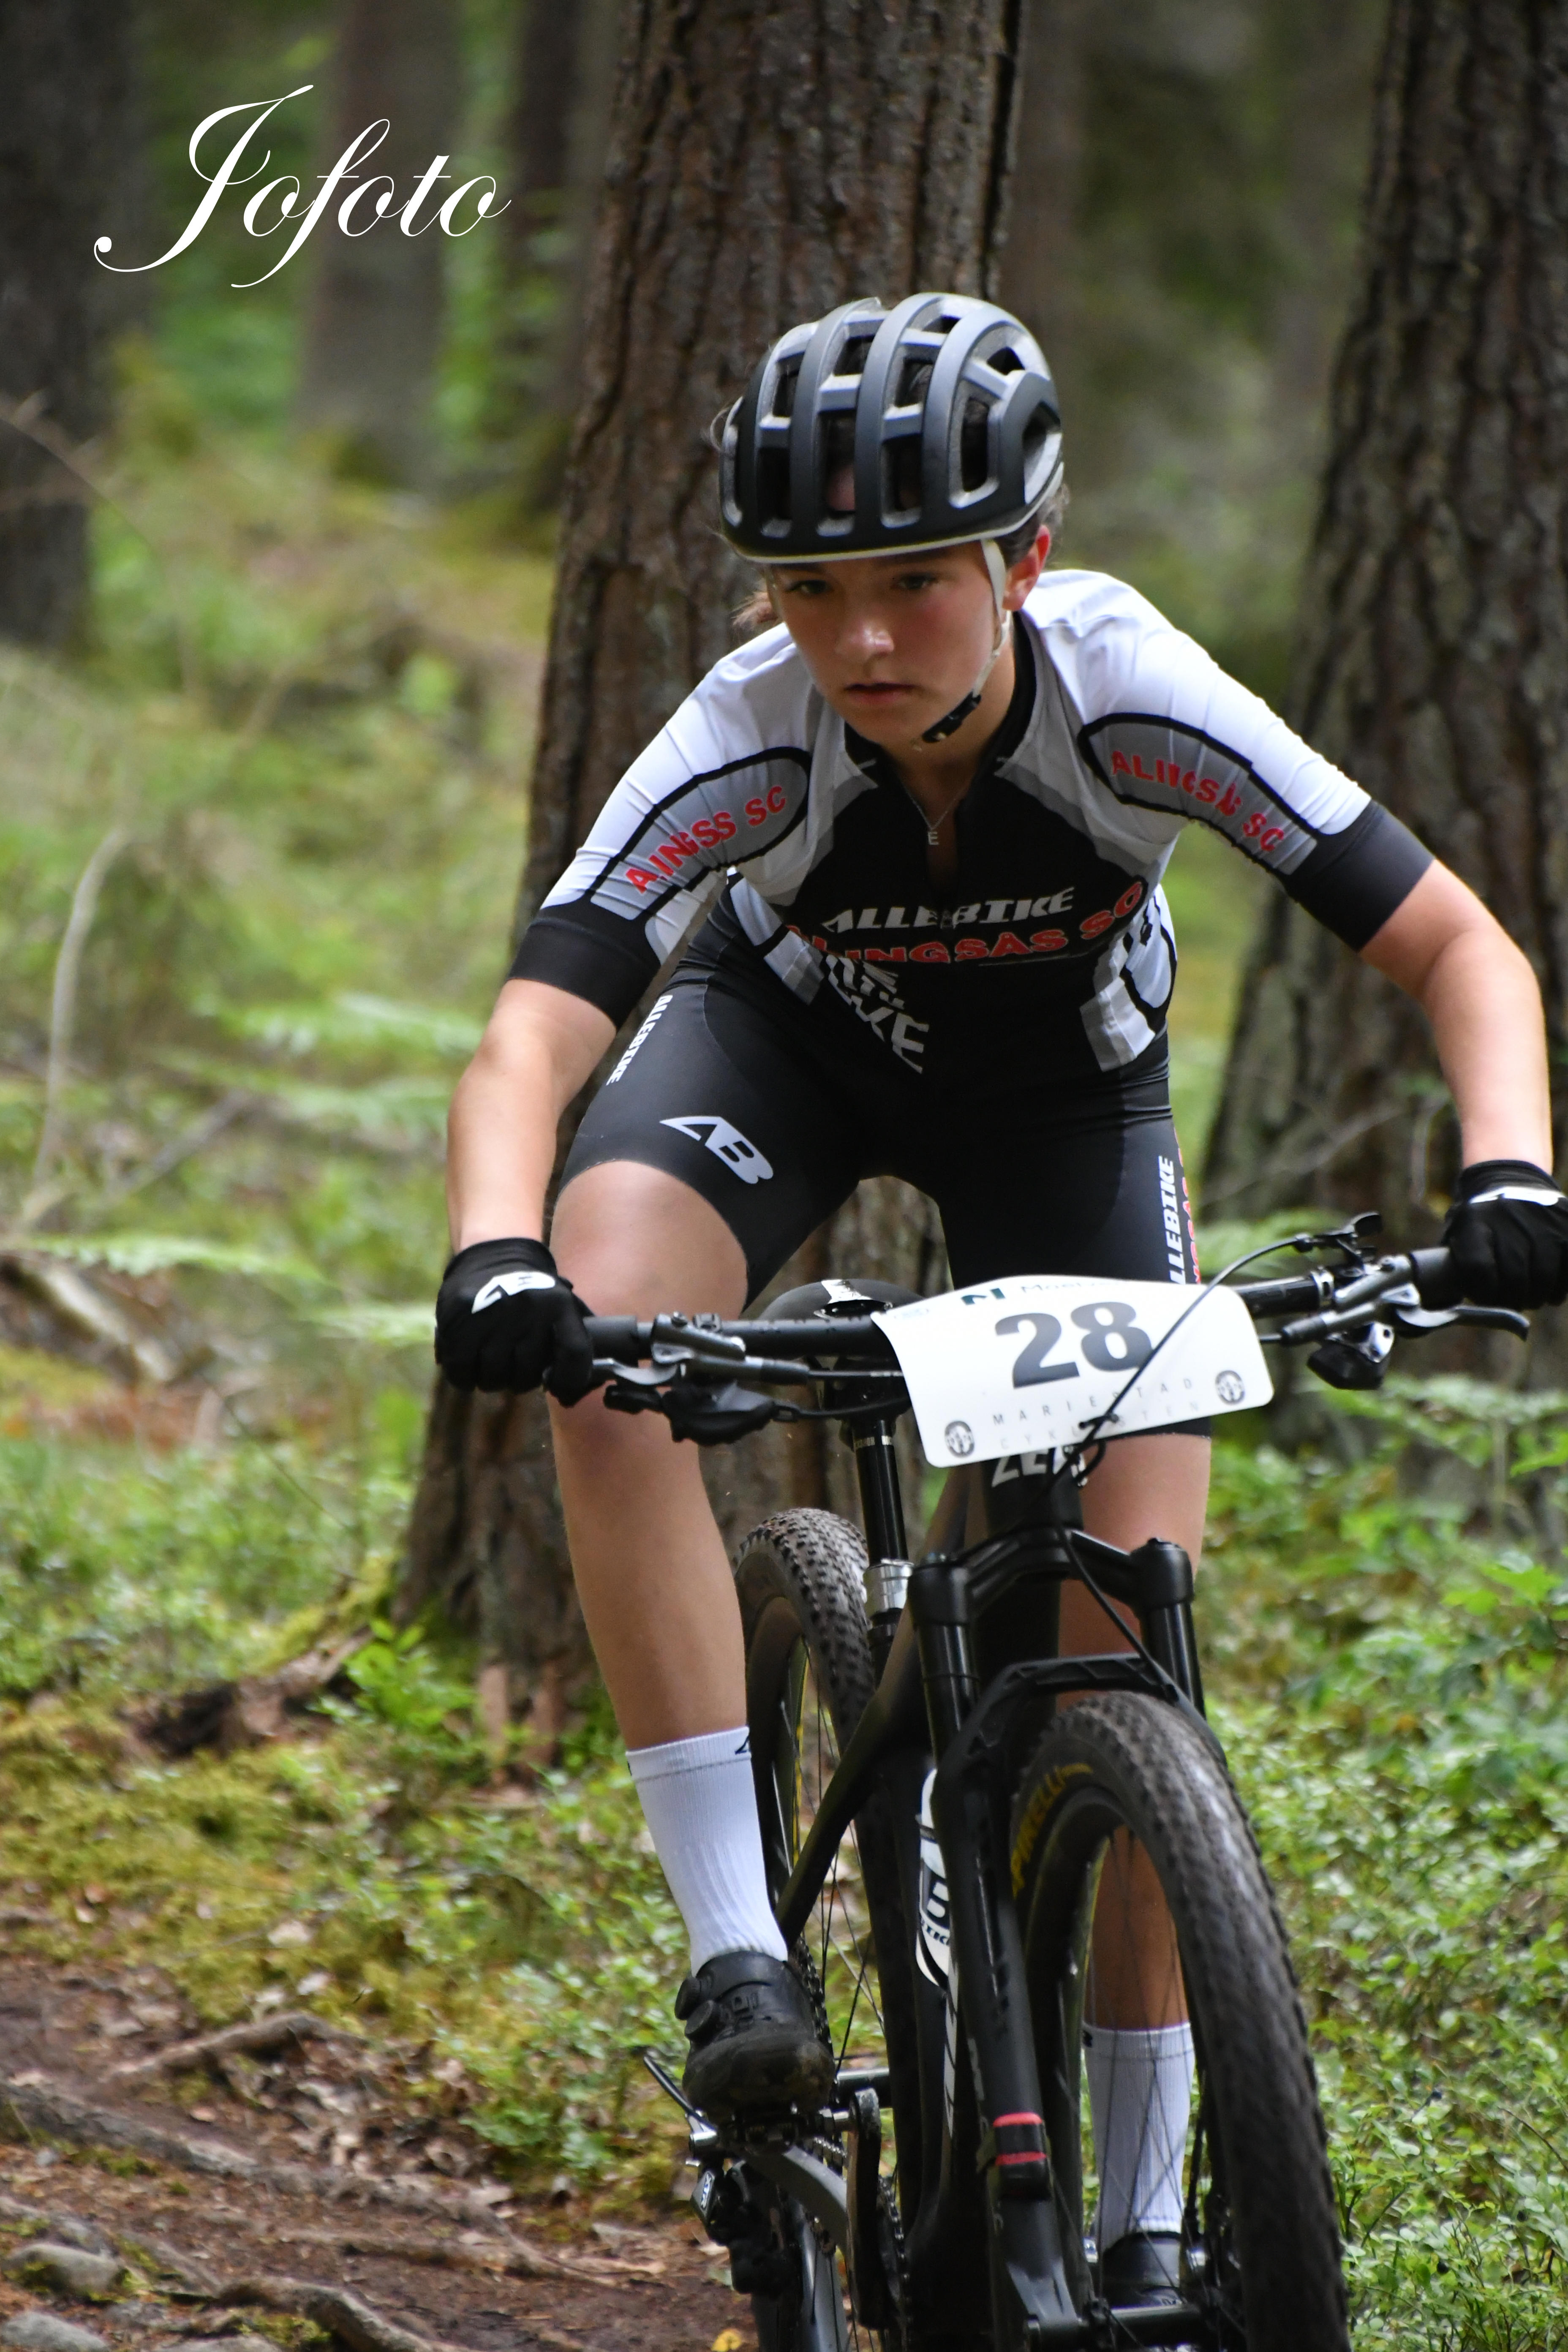 Mariestadcyklisten Västgötacupen (502)